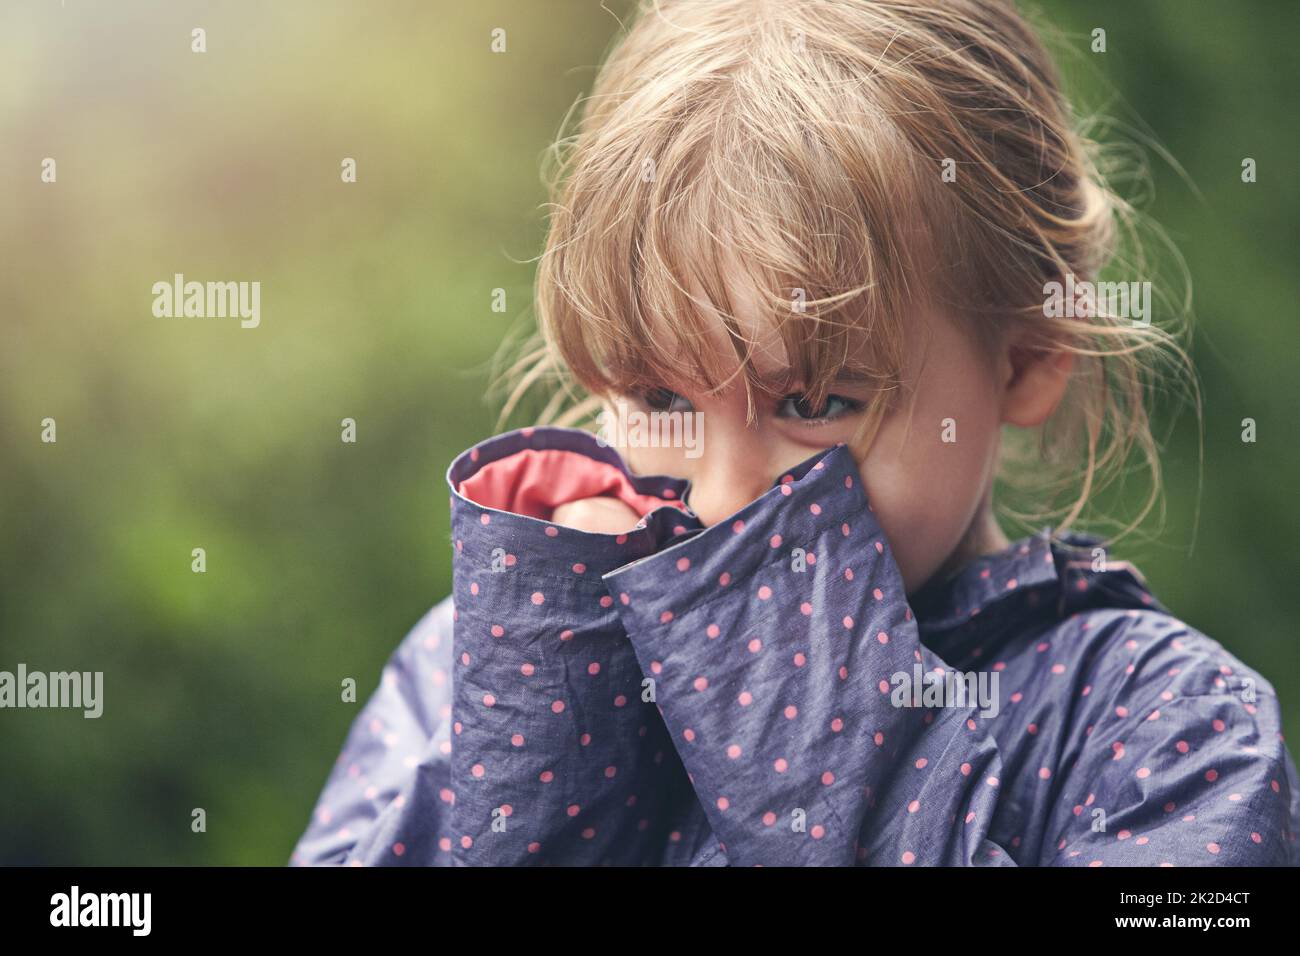 Bambina timida immagini e fotografie stock ad alta risoluzione - Alamy